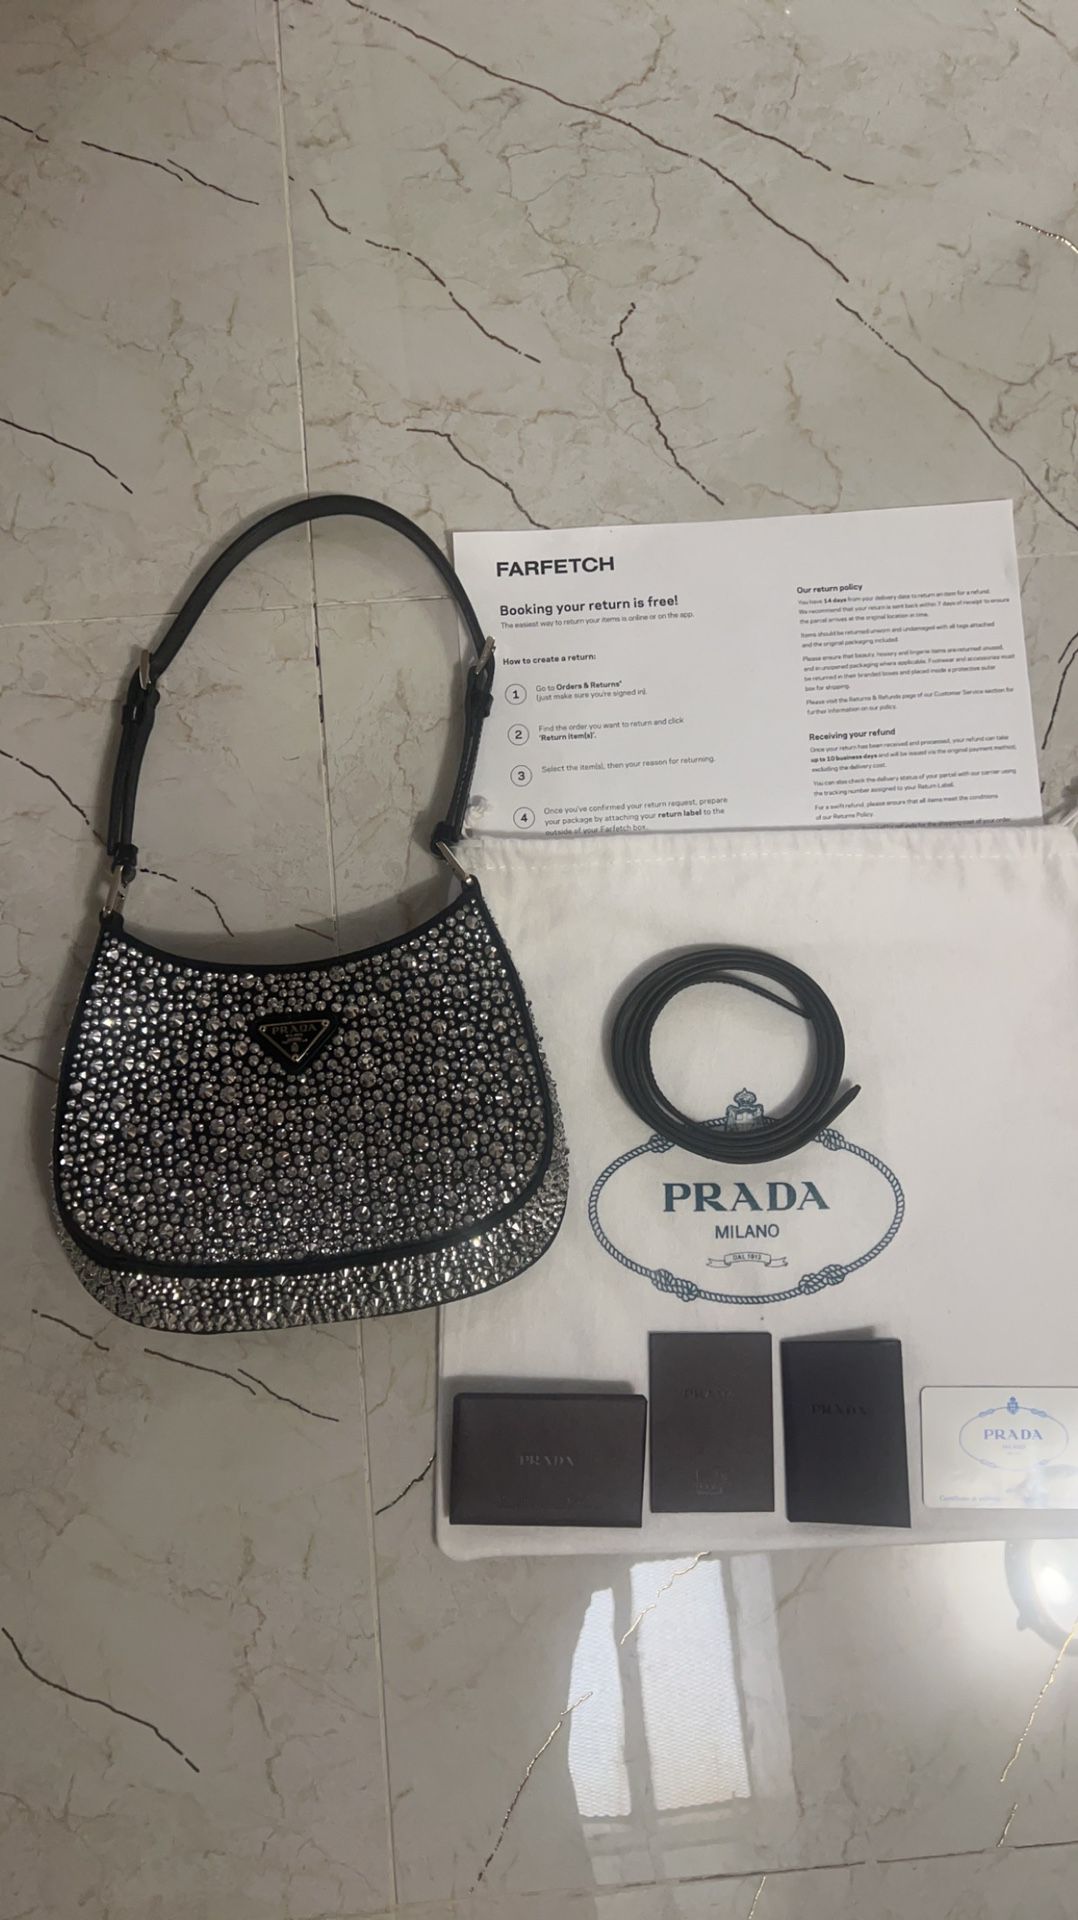 Prada Cleo Satin Bag With Appliqués Crystals (Metal/Black)